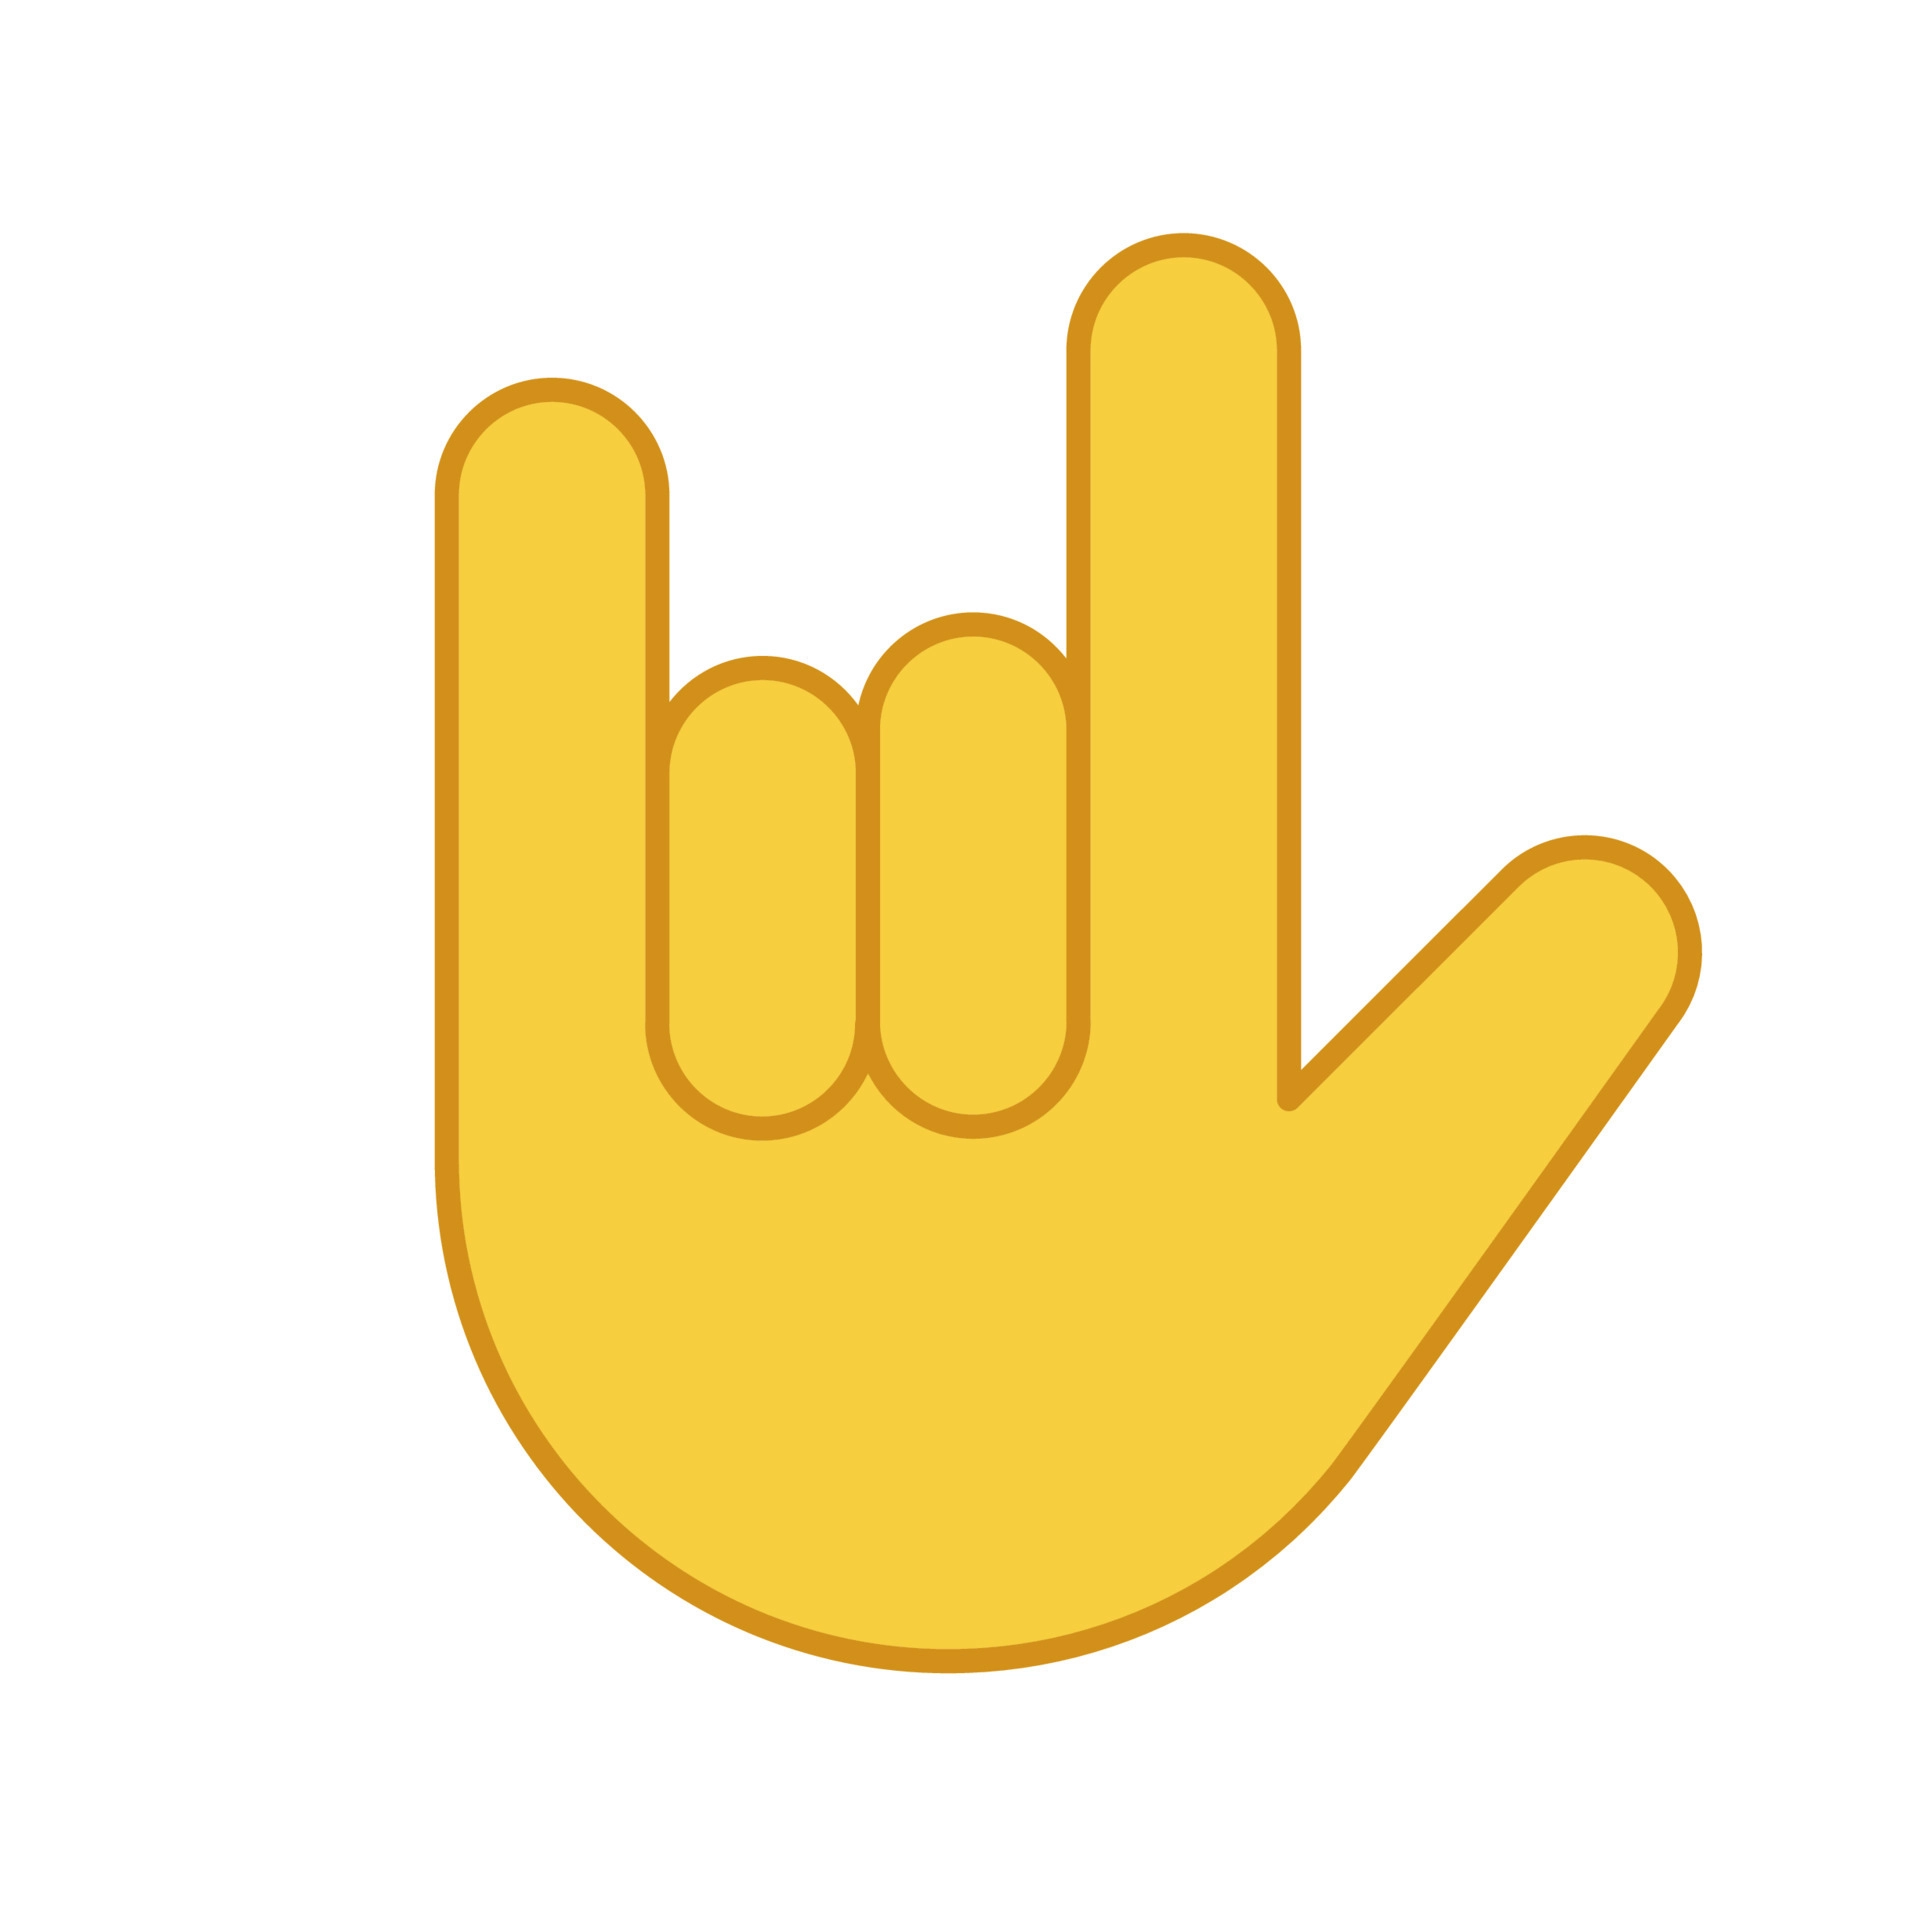 Emoji de la mano con gesto de cuernos
